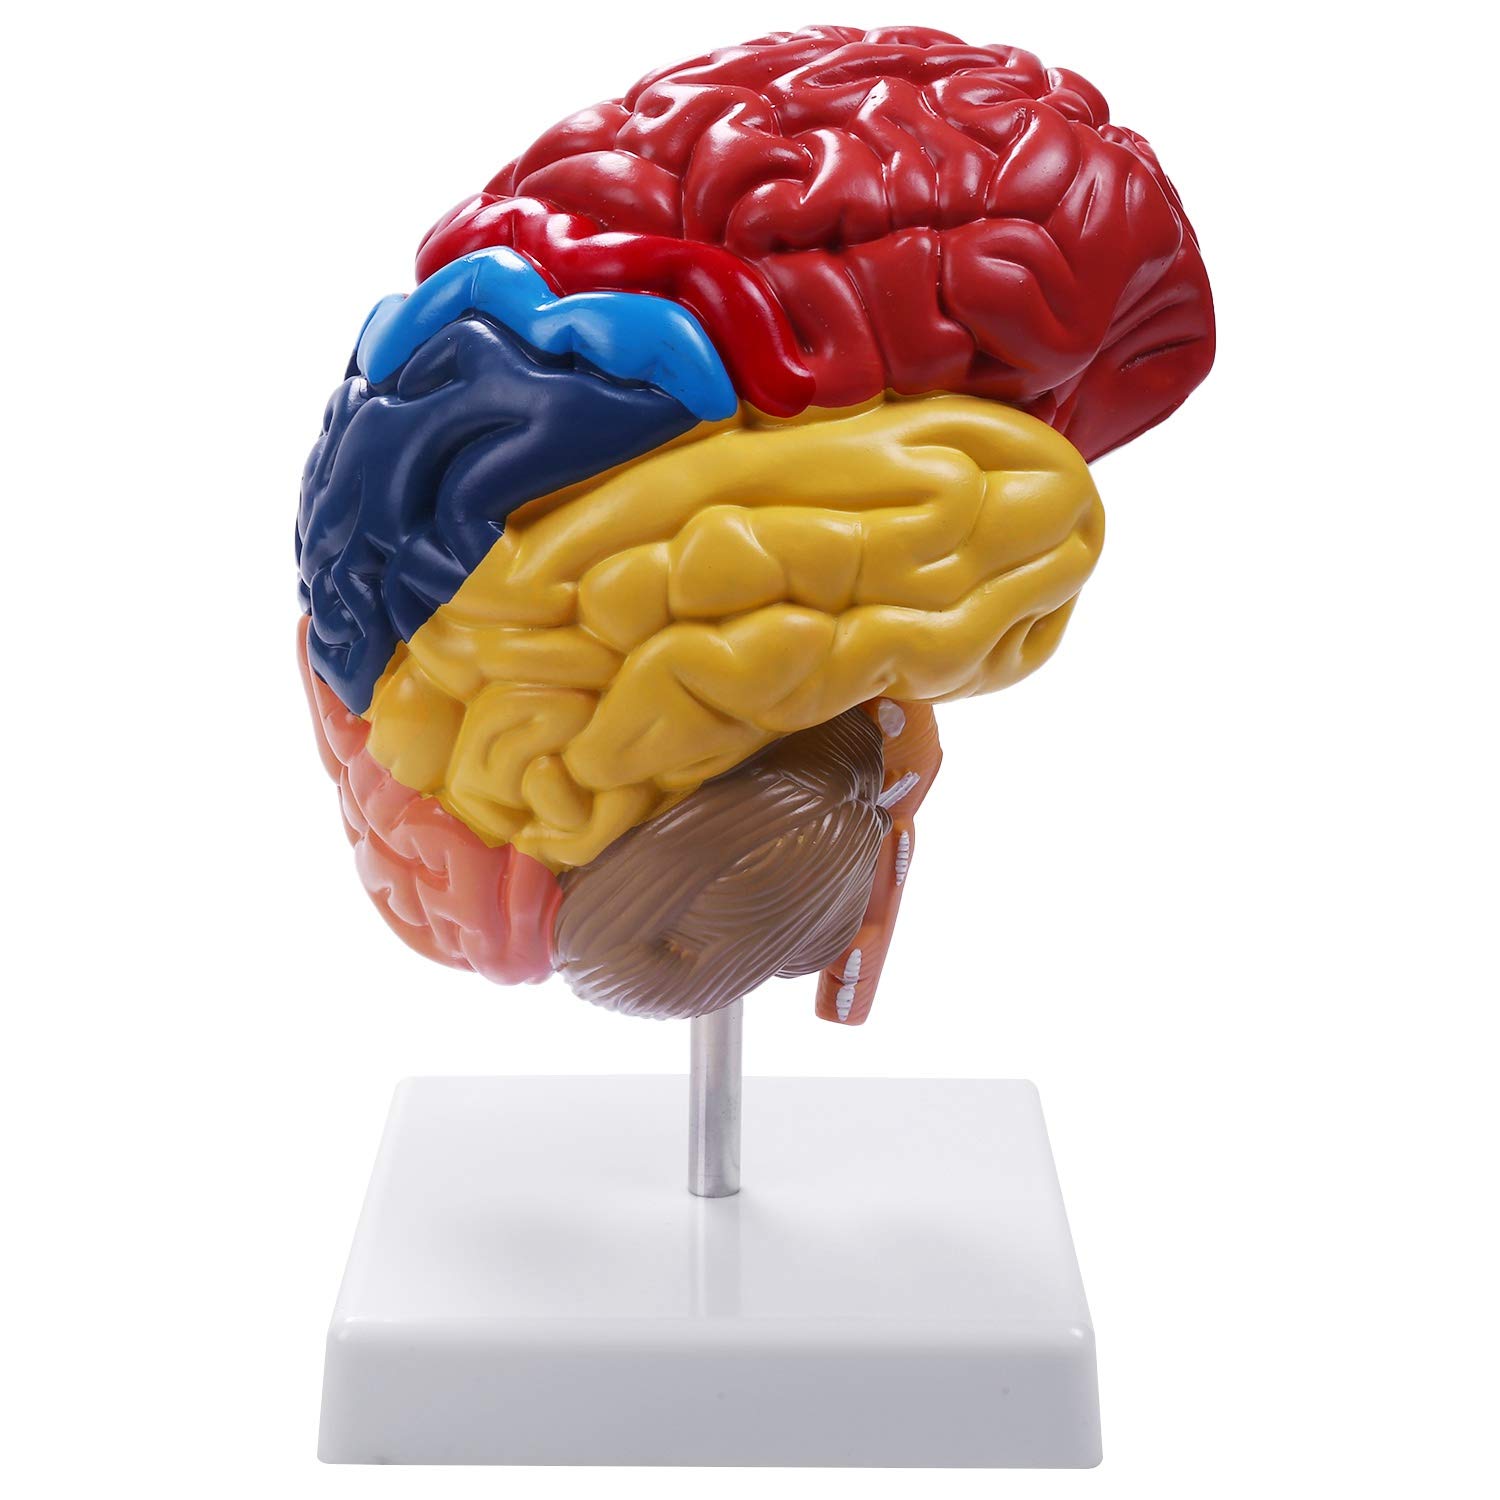 Katigan Gehirn Anatomisches Modell Anatomie 1: 1 Halbes Gehirn Gehirnstamm Medizinisches Lehr Labor Zubeh？R